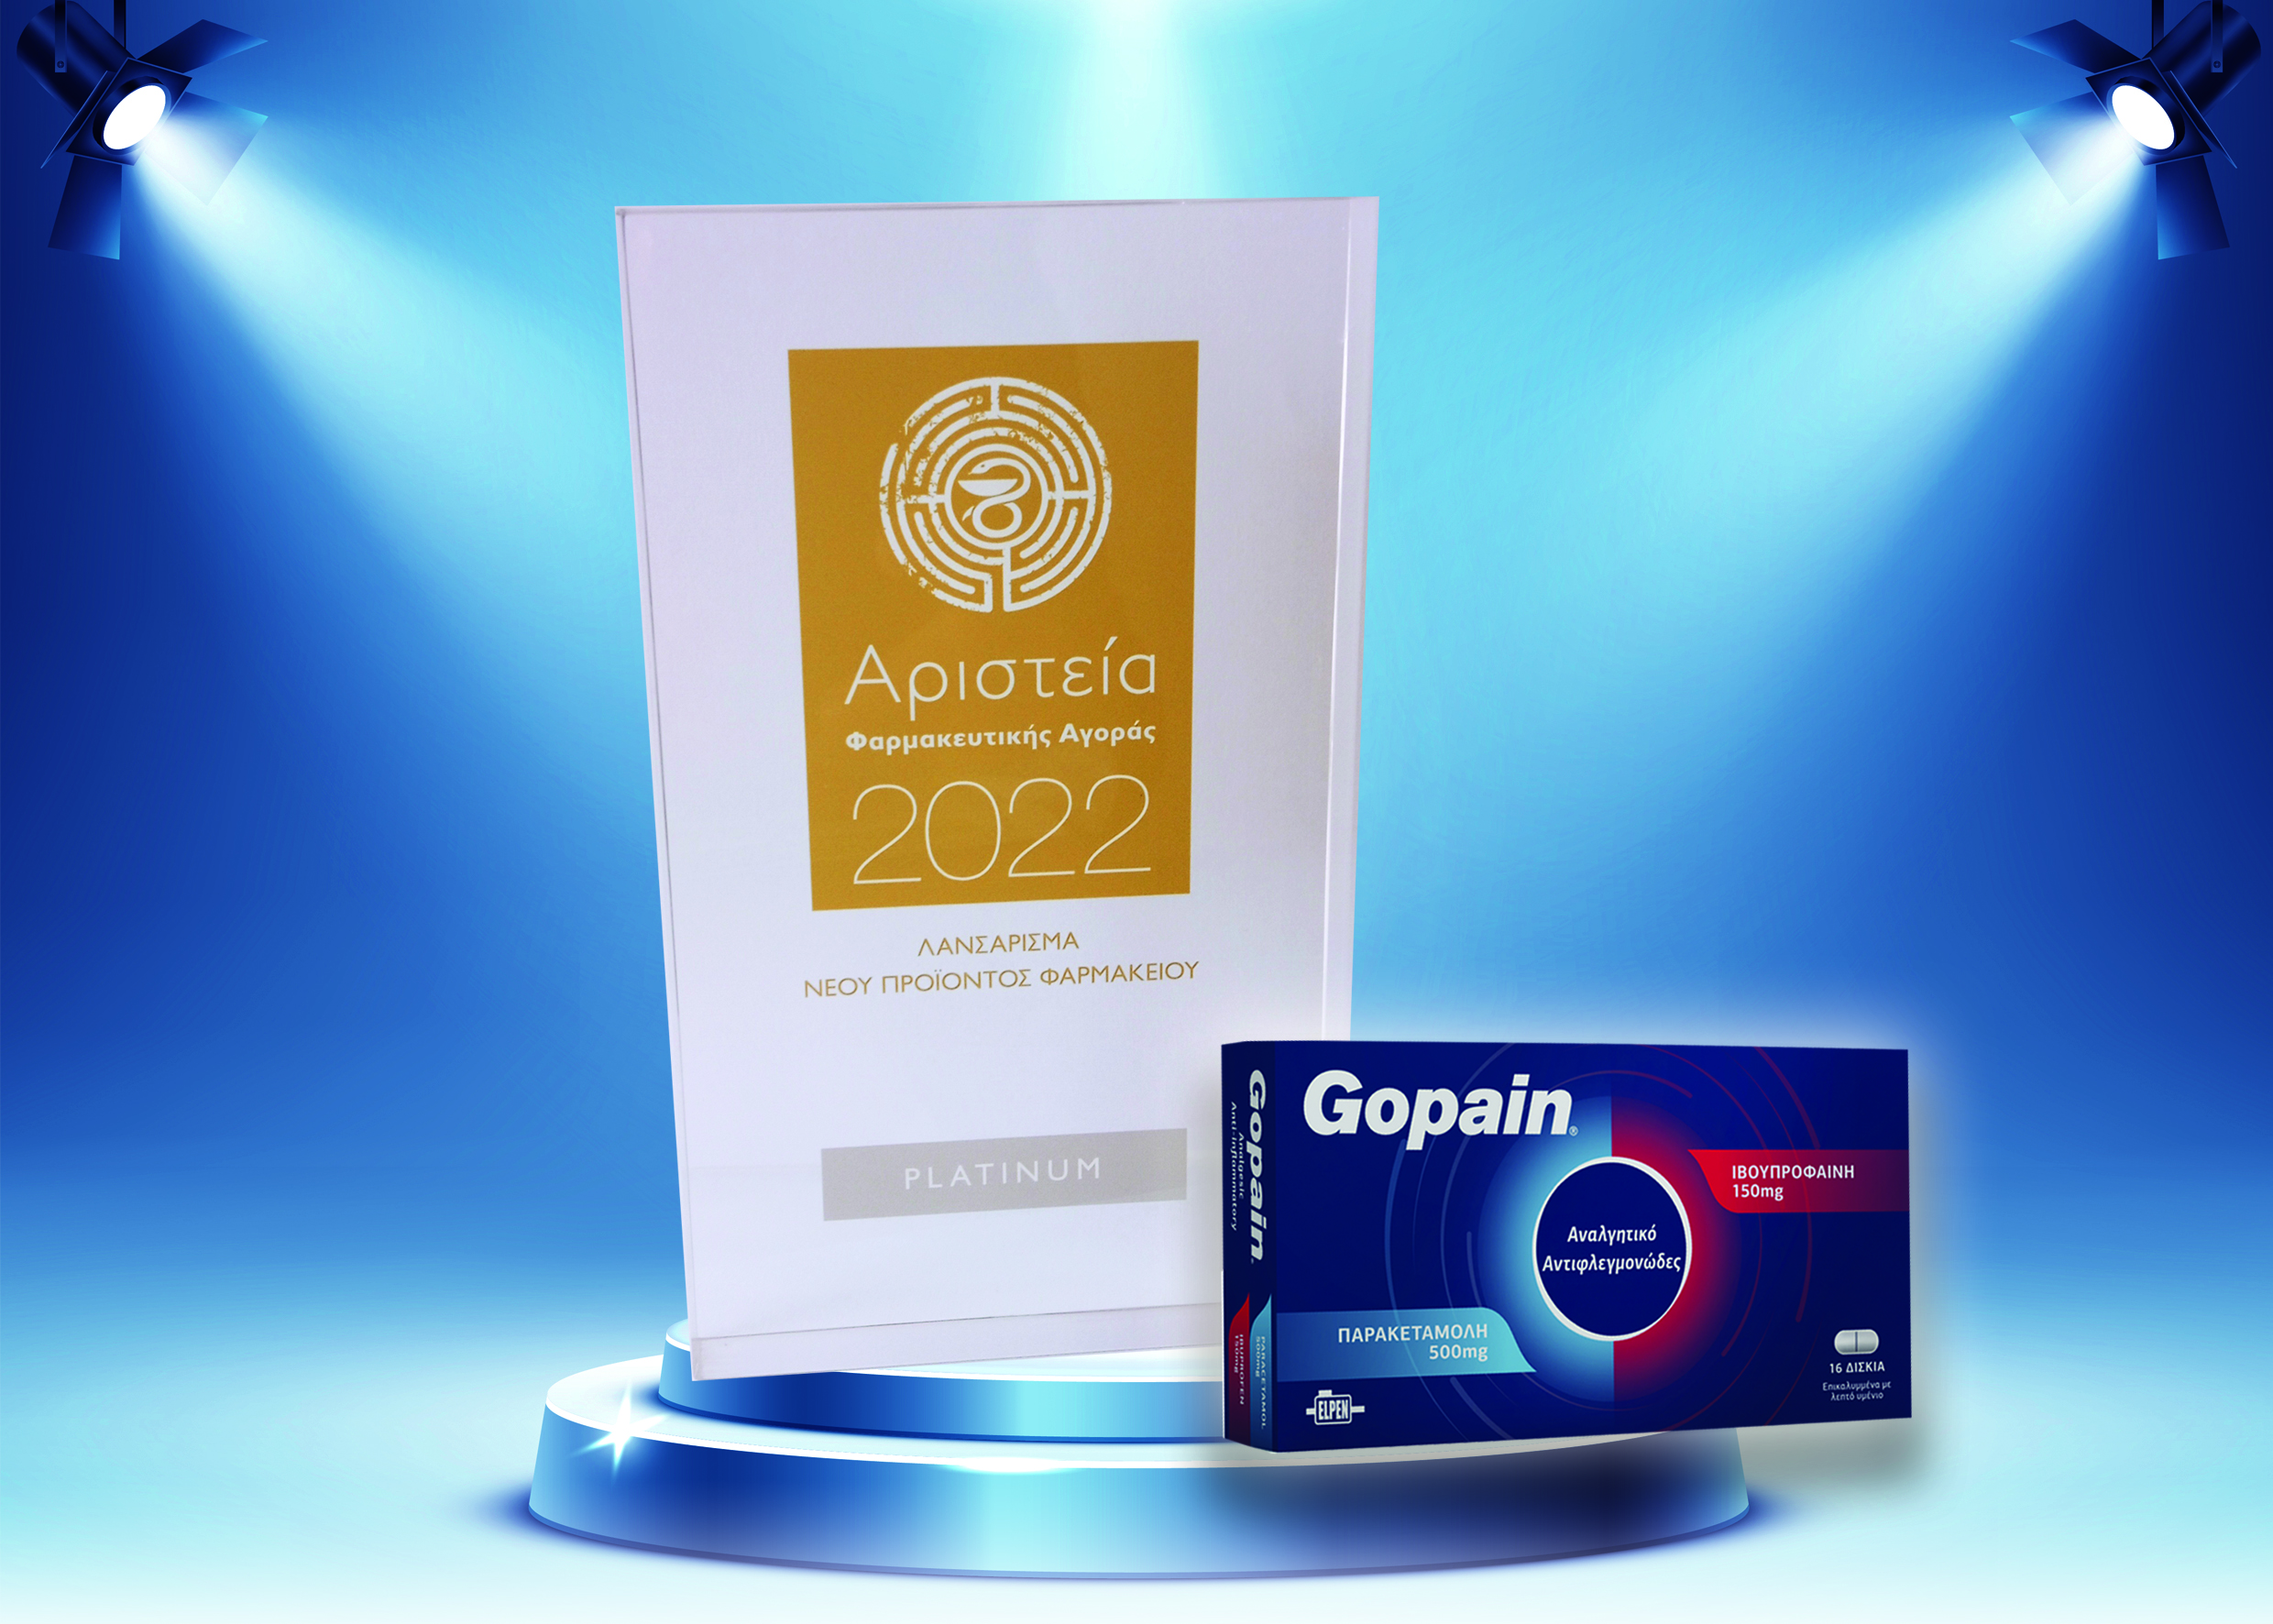 Πλατινένια διάκριση για το Gopain® στα «Αριστεία Φαρμακευτικής Αγοράς 2022»! 